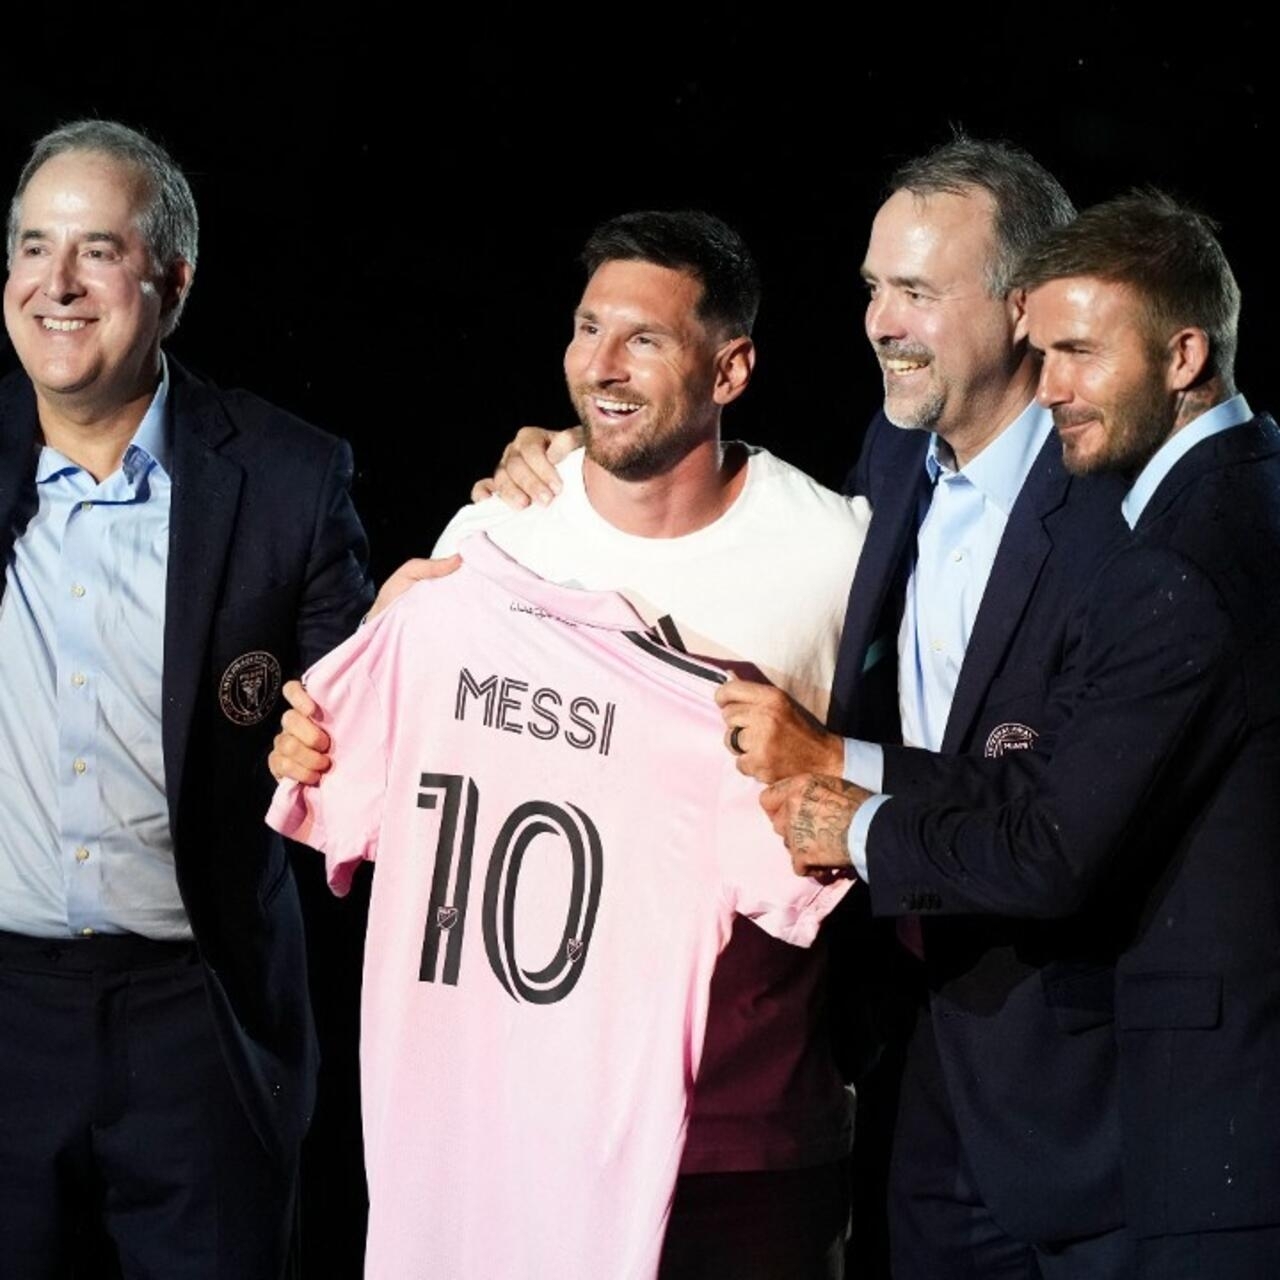 Le club de Messi dément son déplacement en Arabie en février